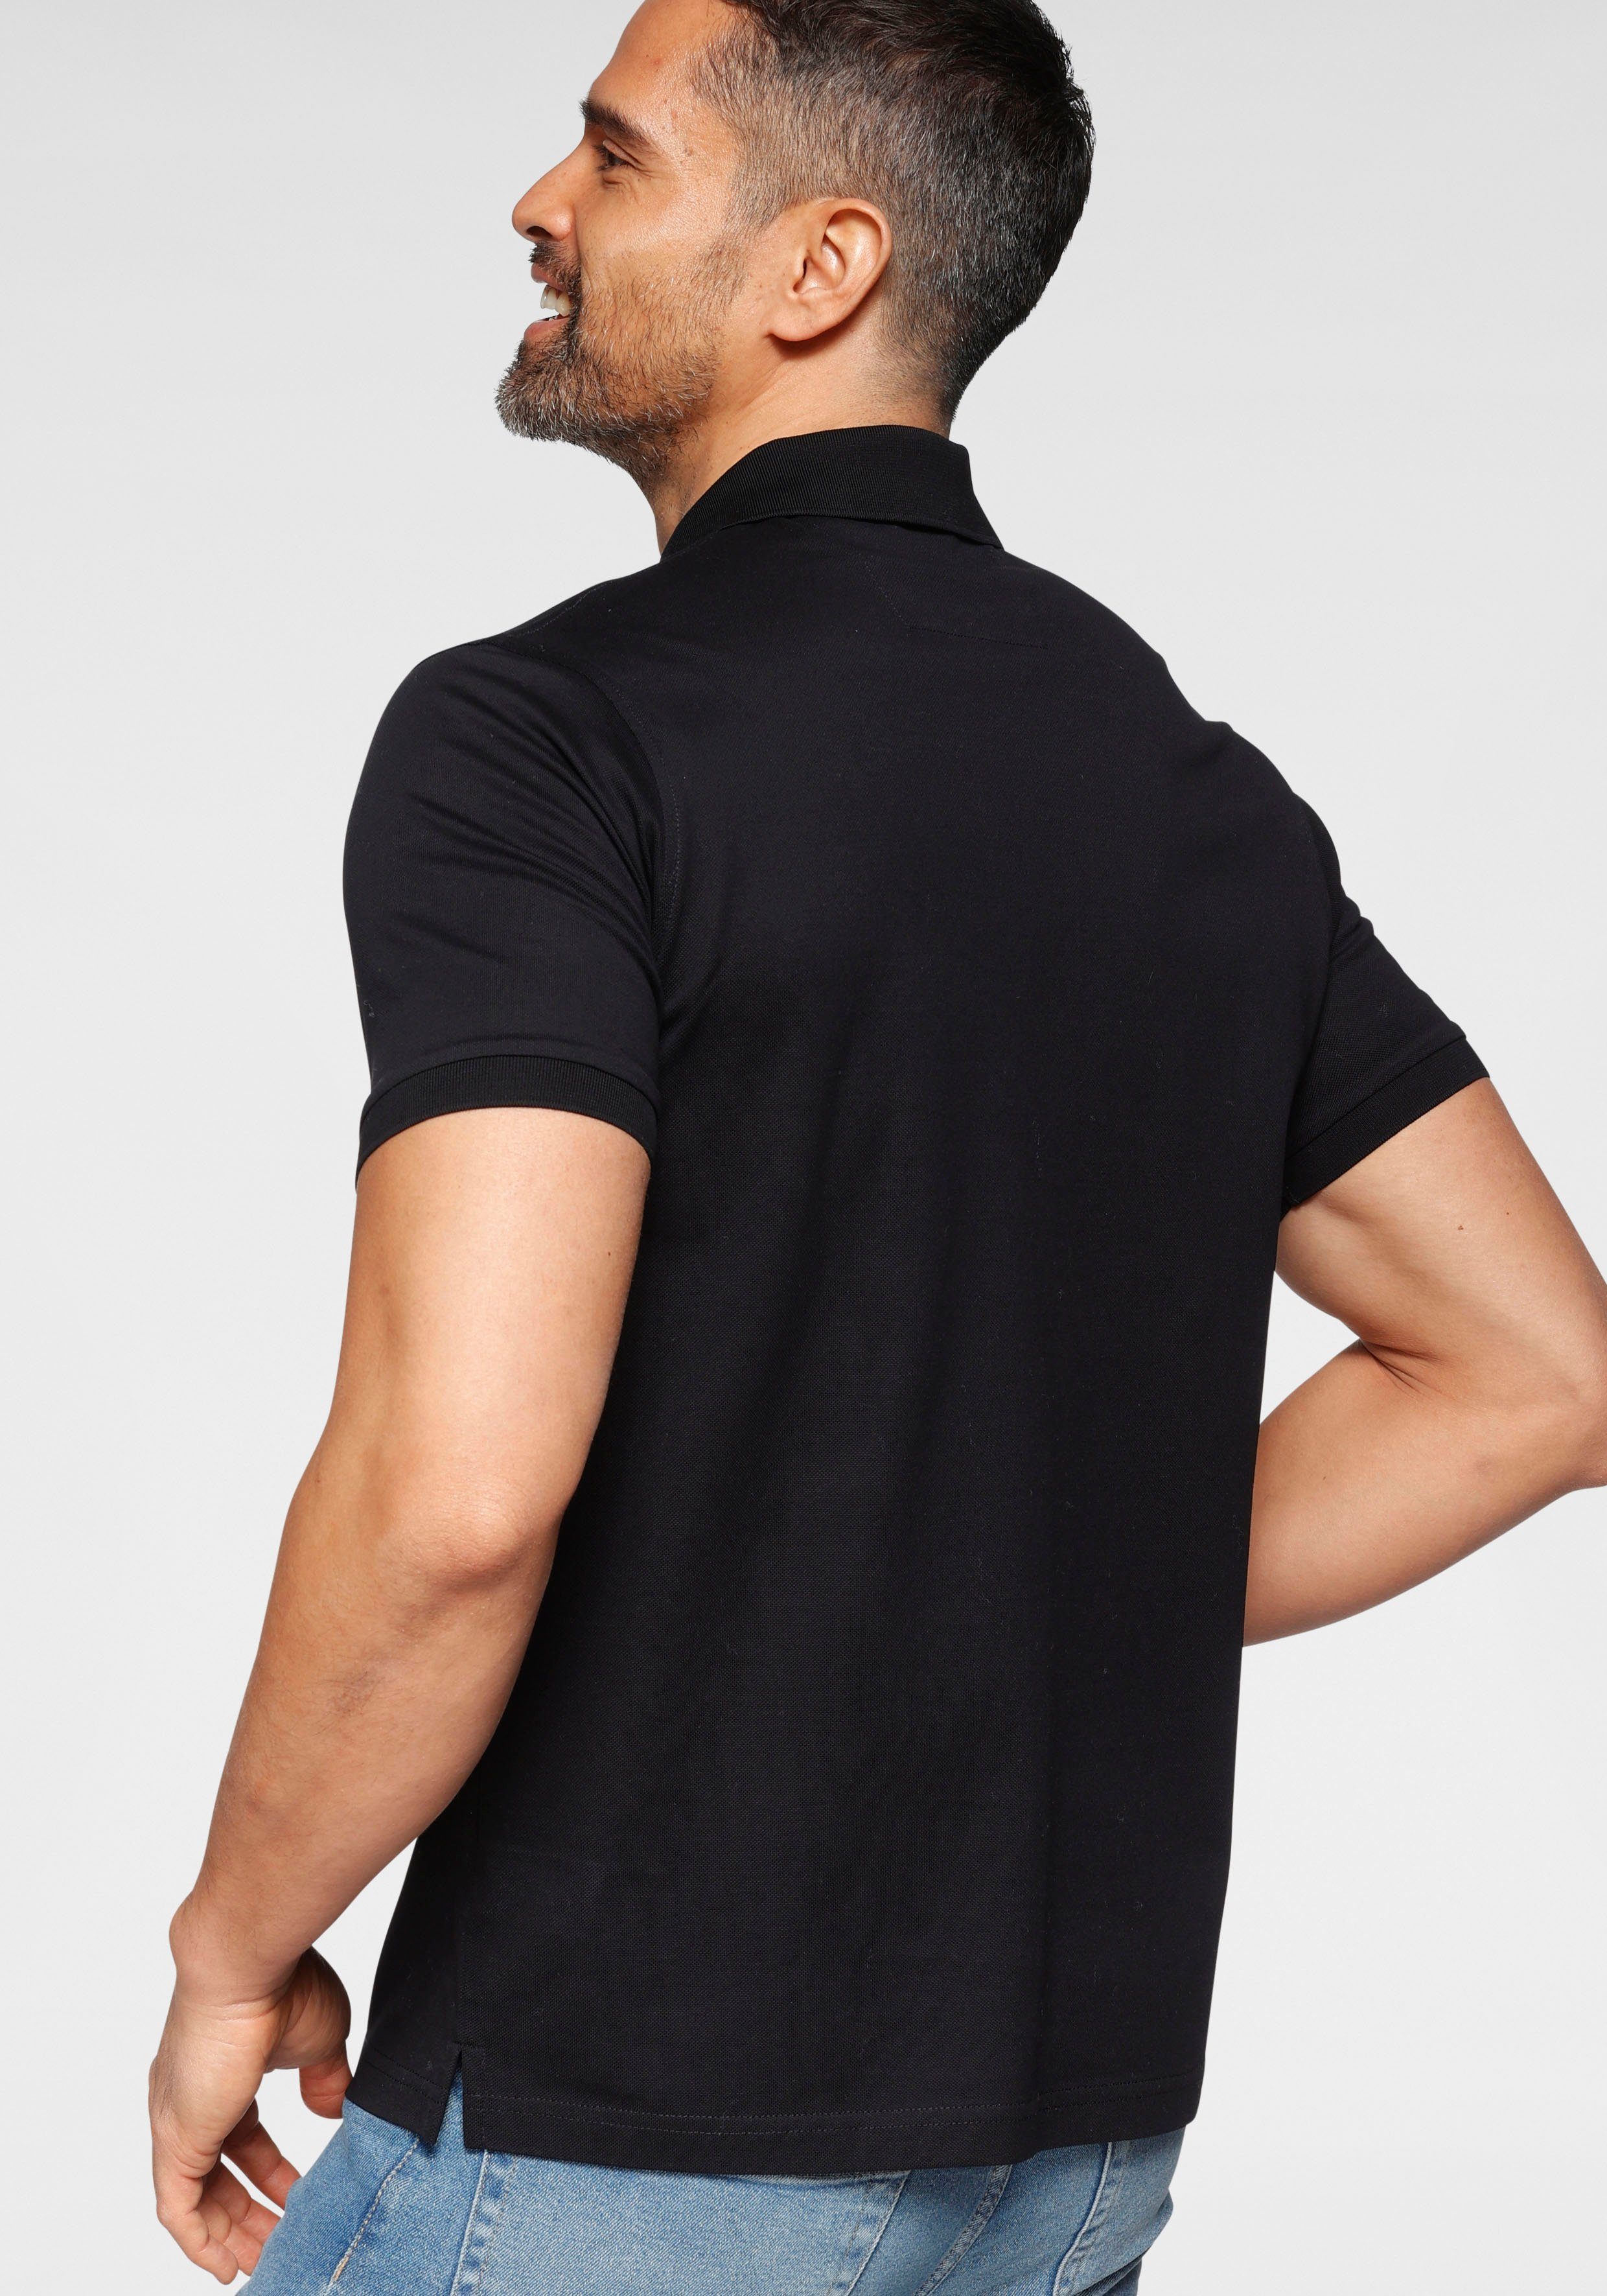 mit OLYMP fit Luxor modern schwarz Poloshirt Brusttasche